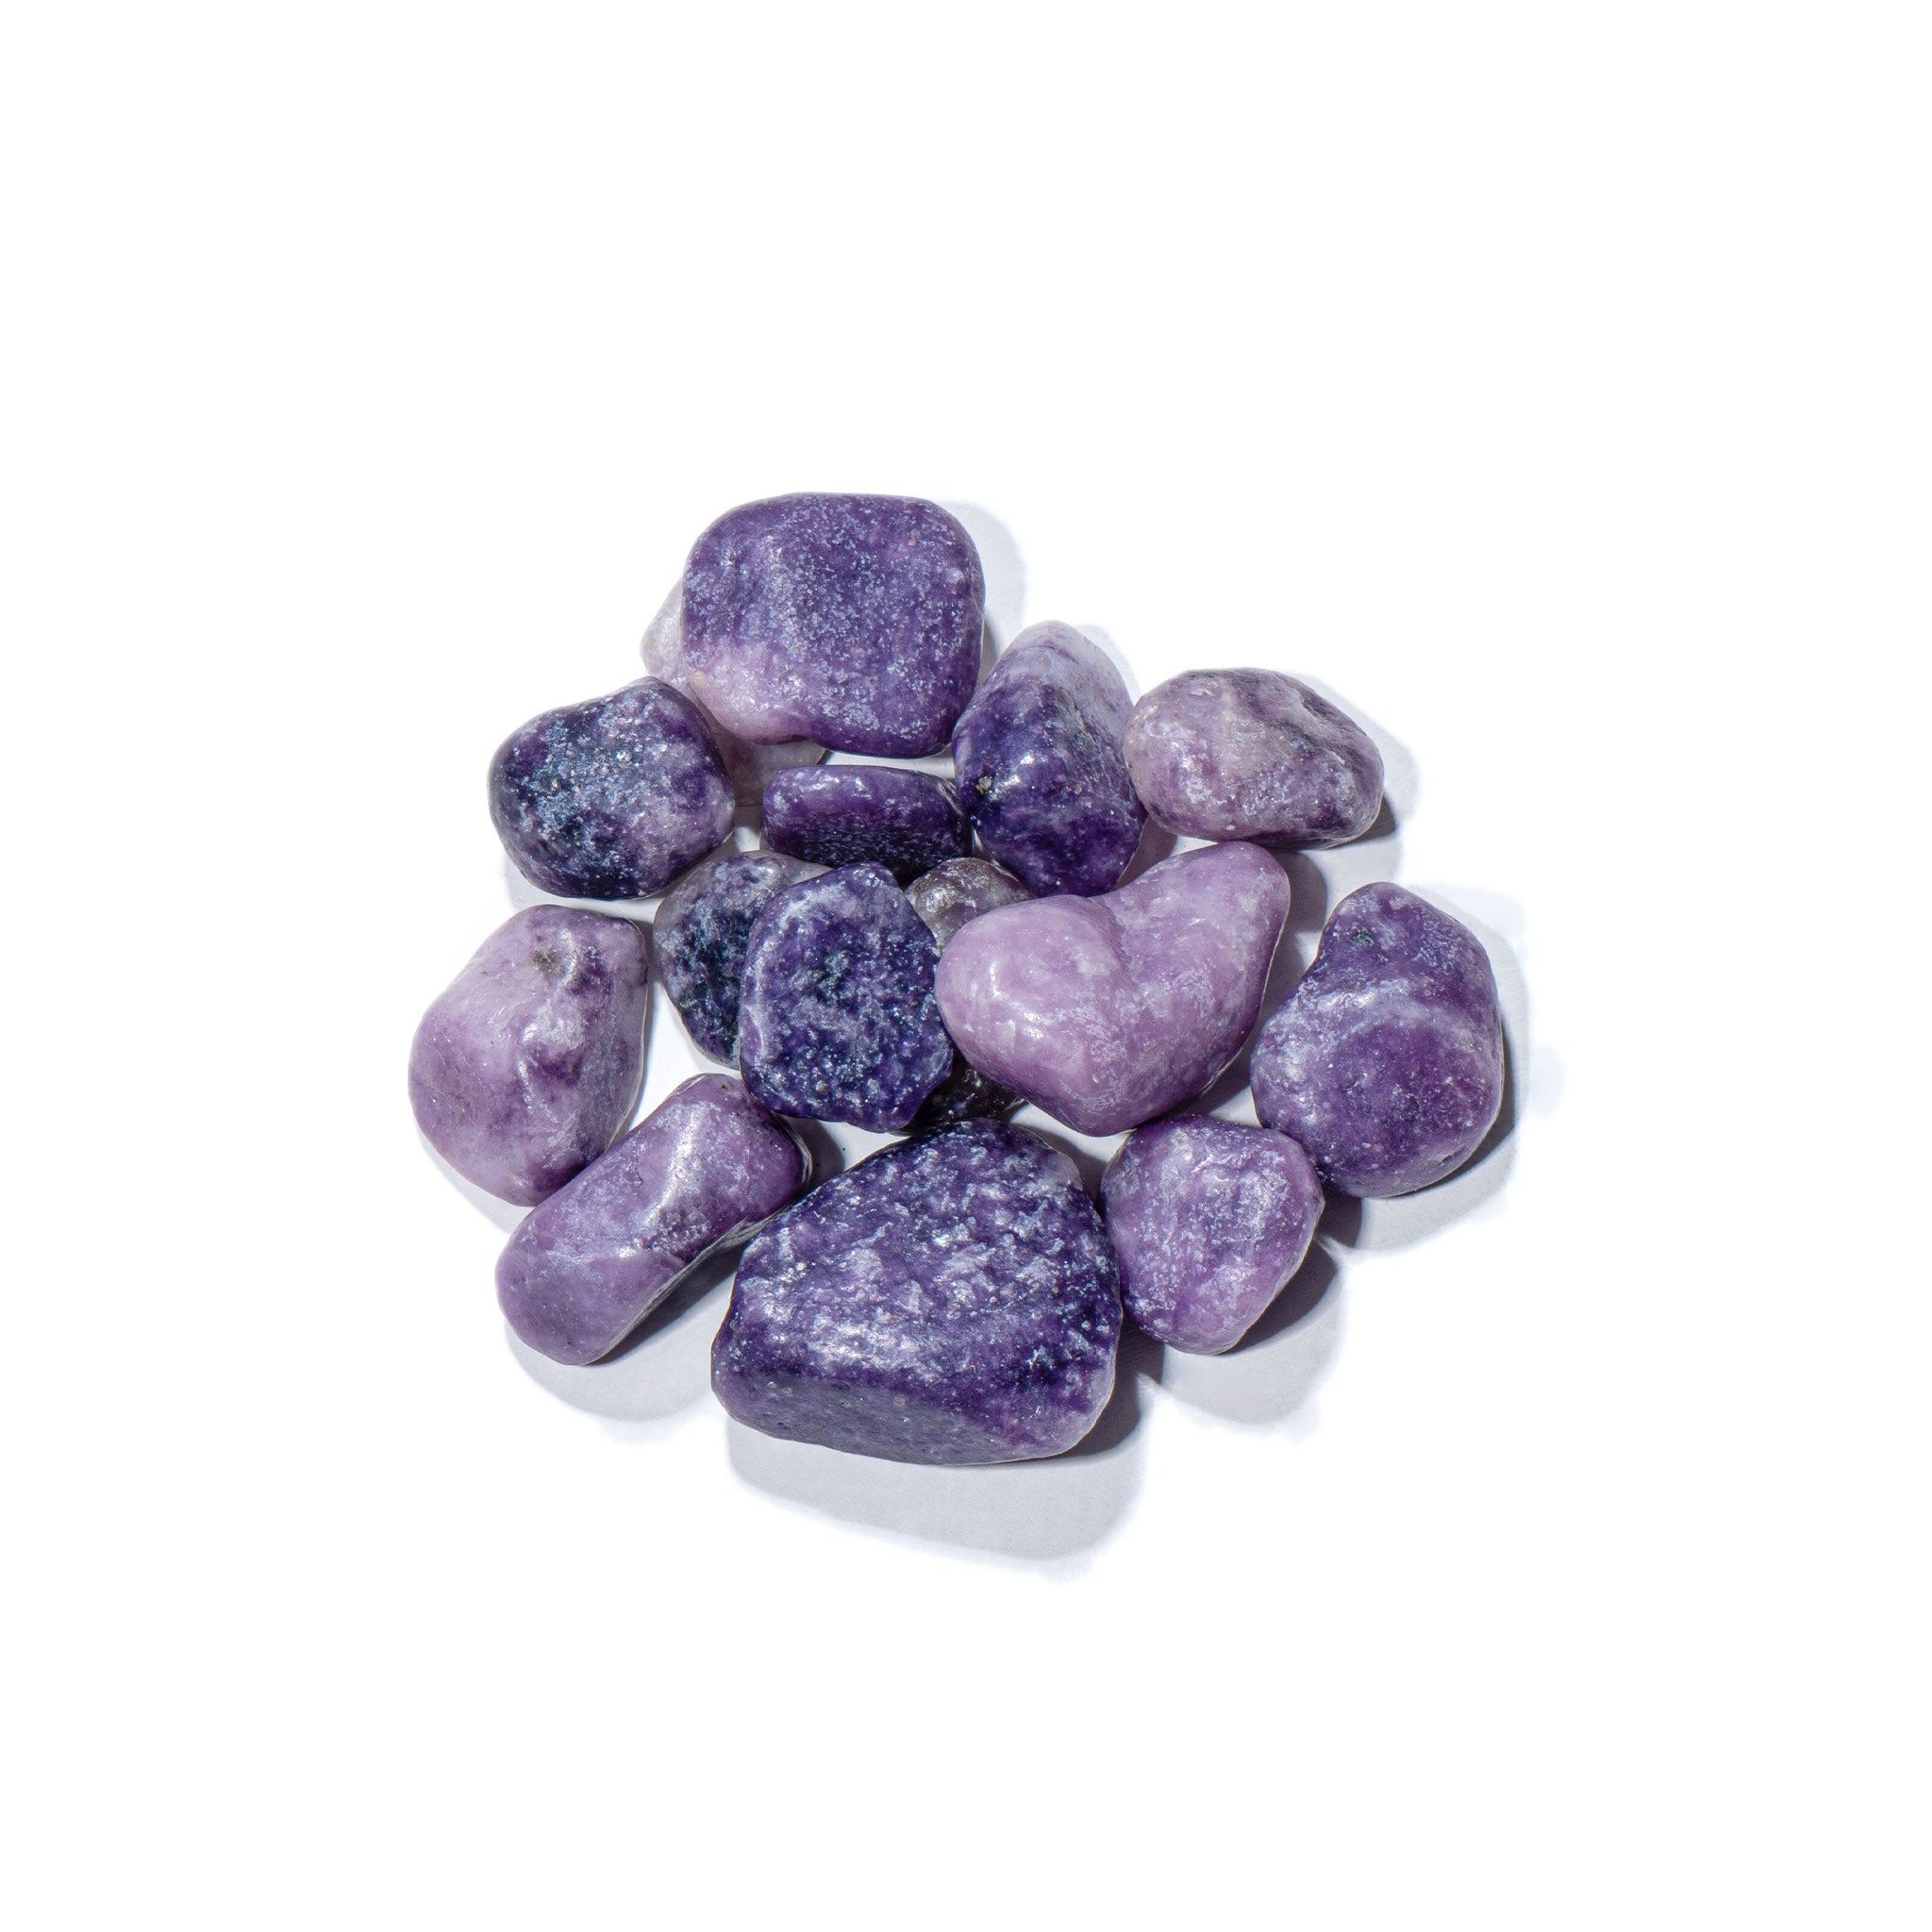 AWNL 瑞典珠寶 天然晶石 美國 紫雲母 淨化充能 消磁石